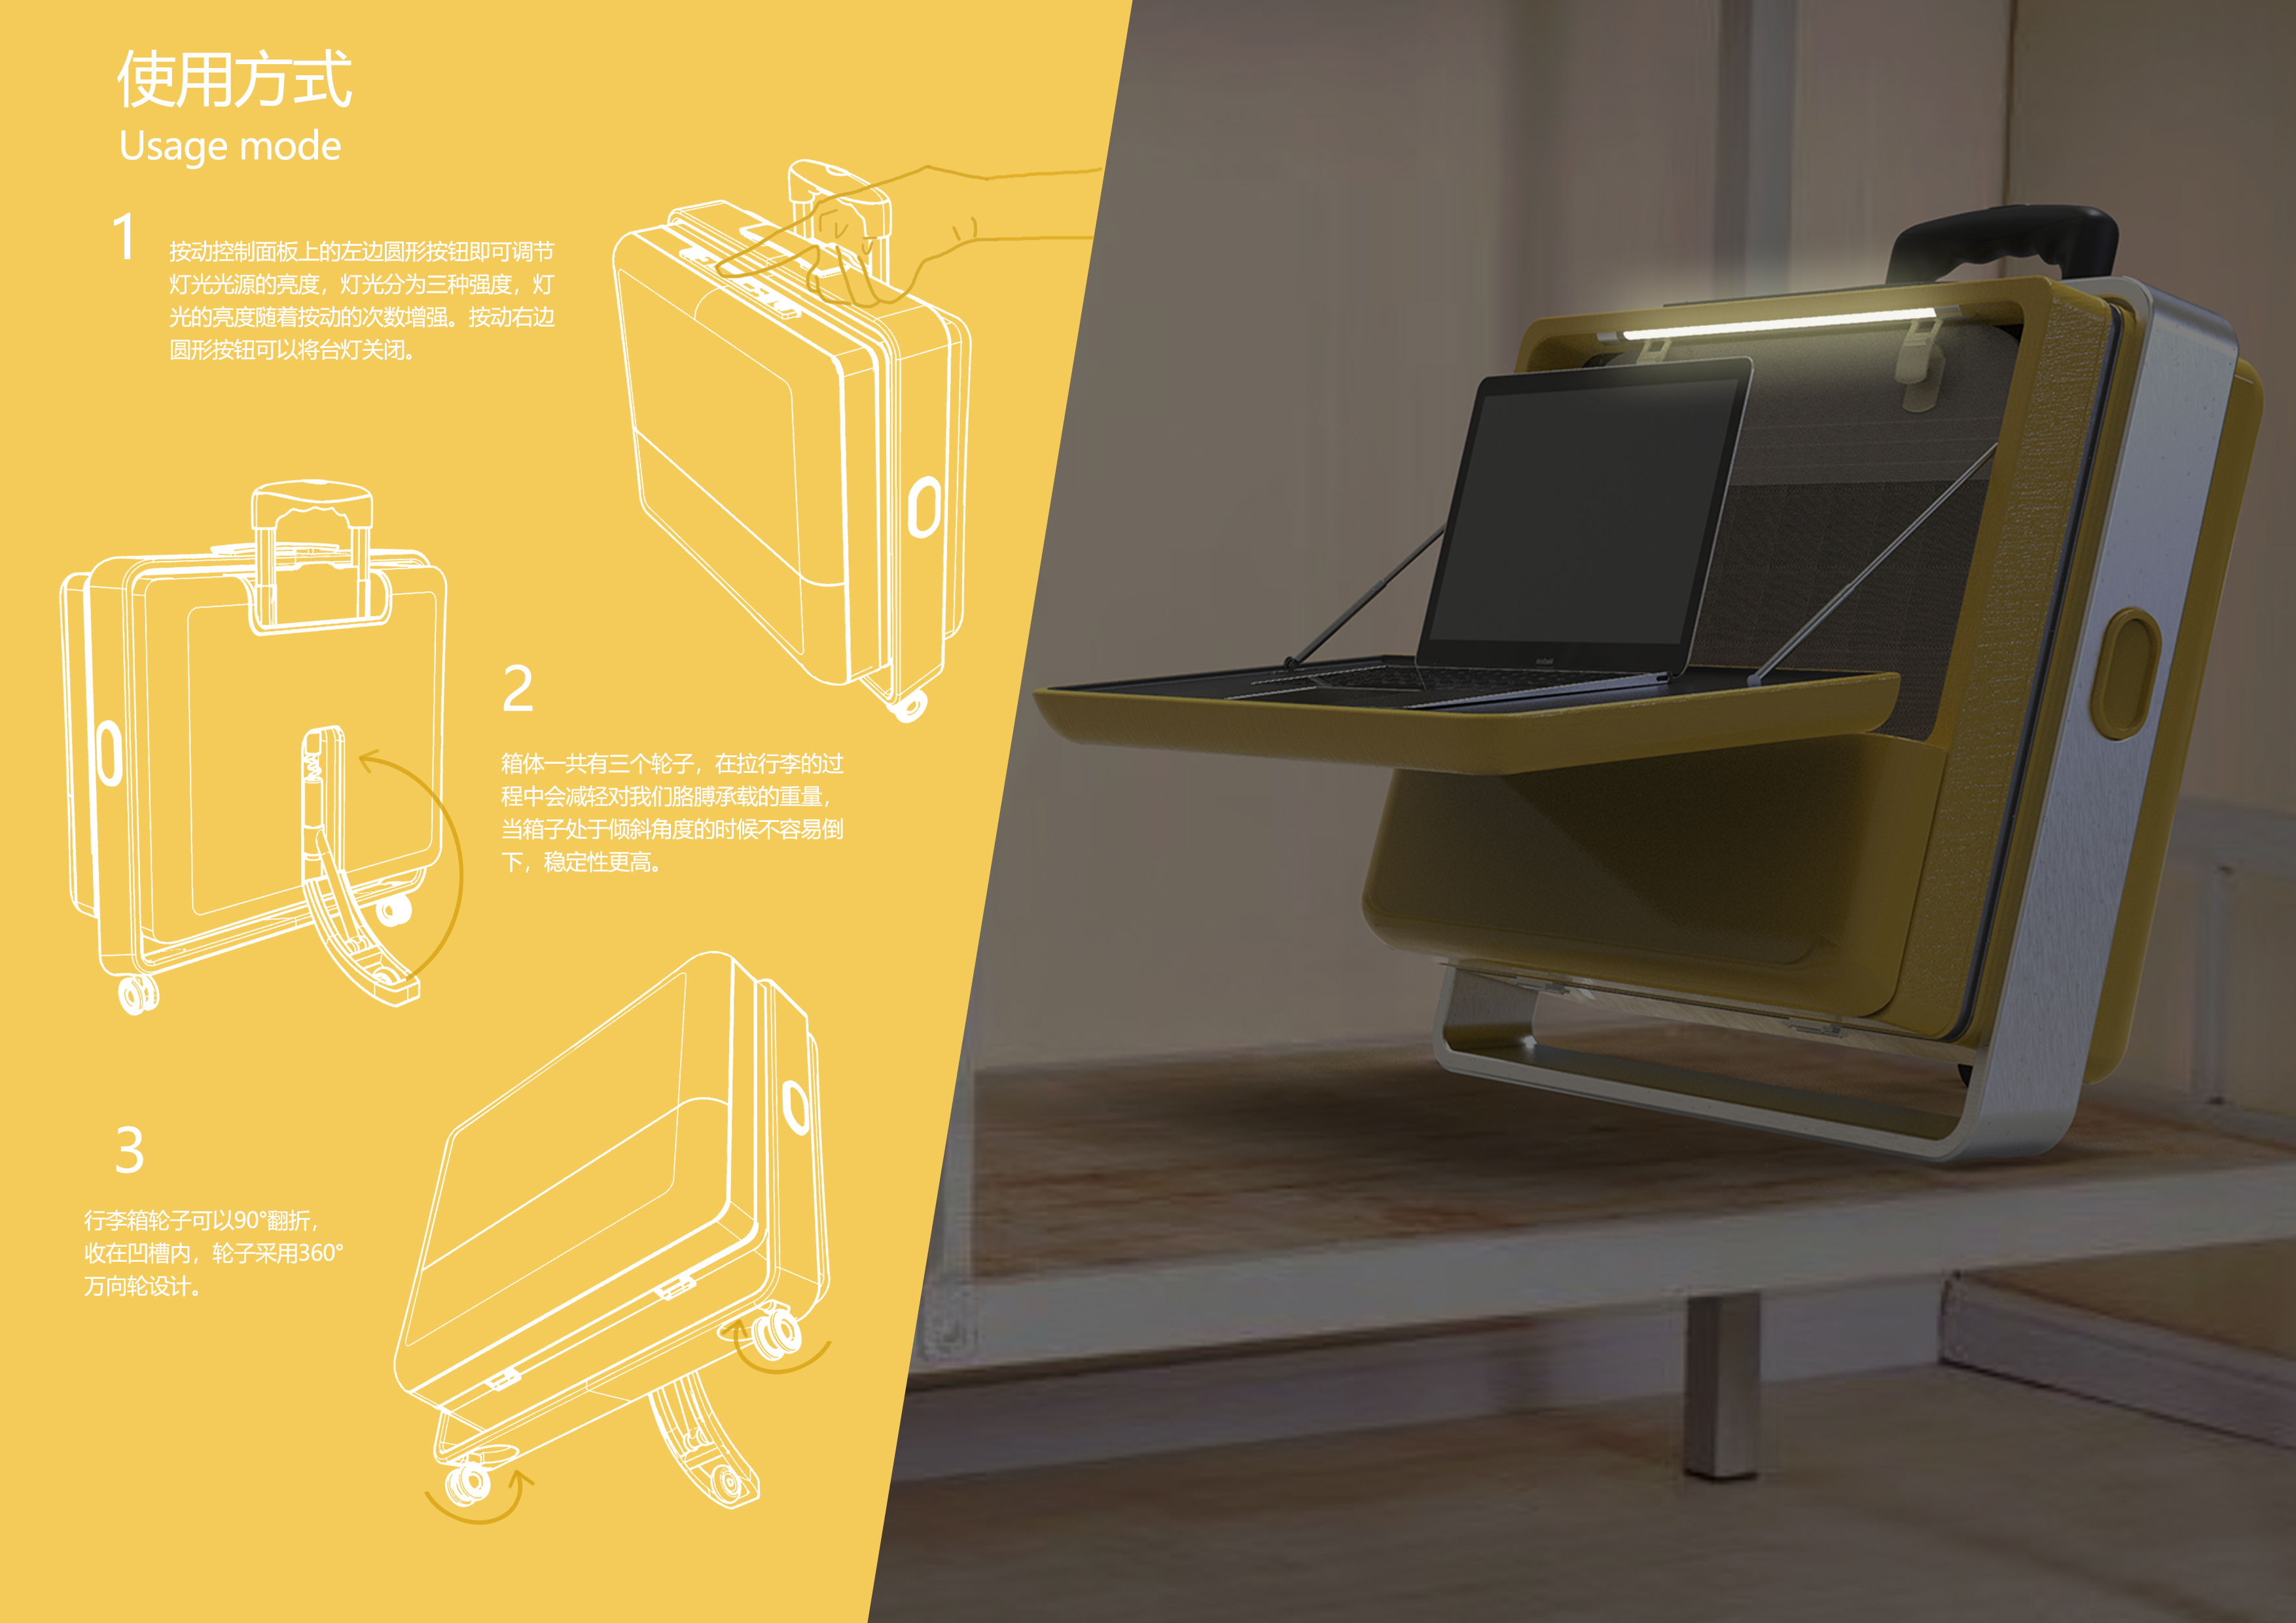 为学生设计的一款创意行李箱可当学习桌